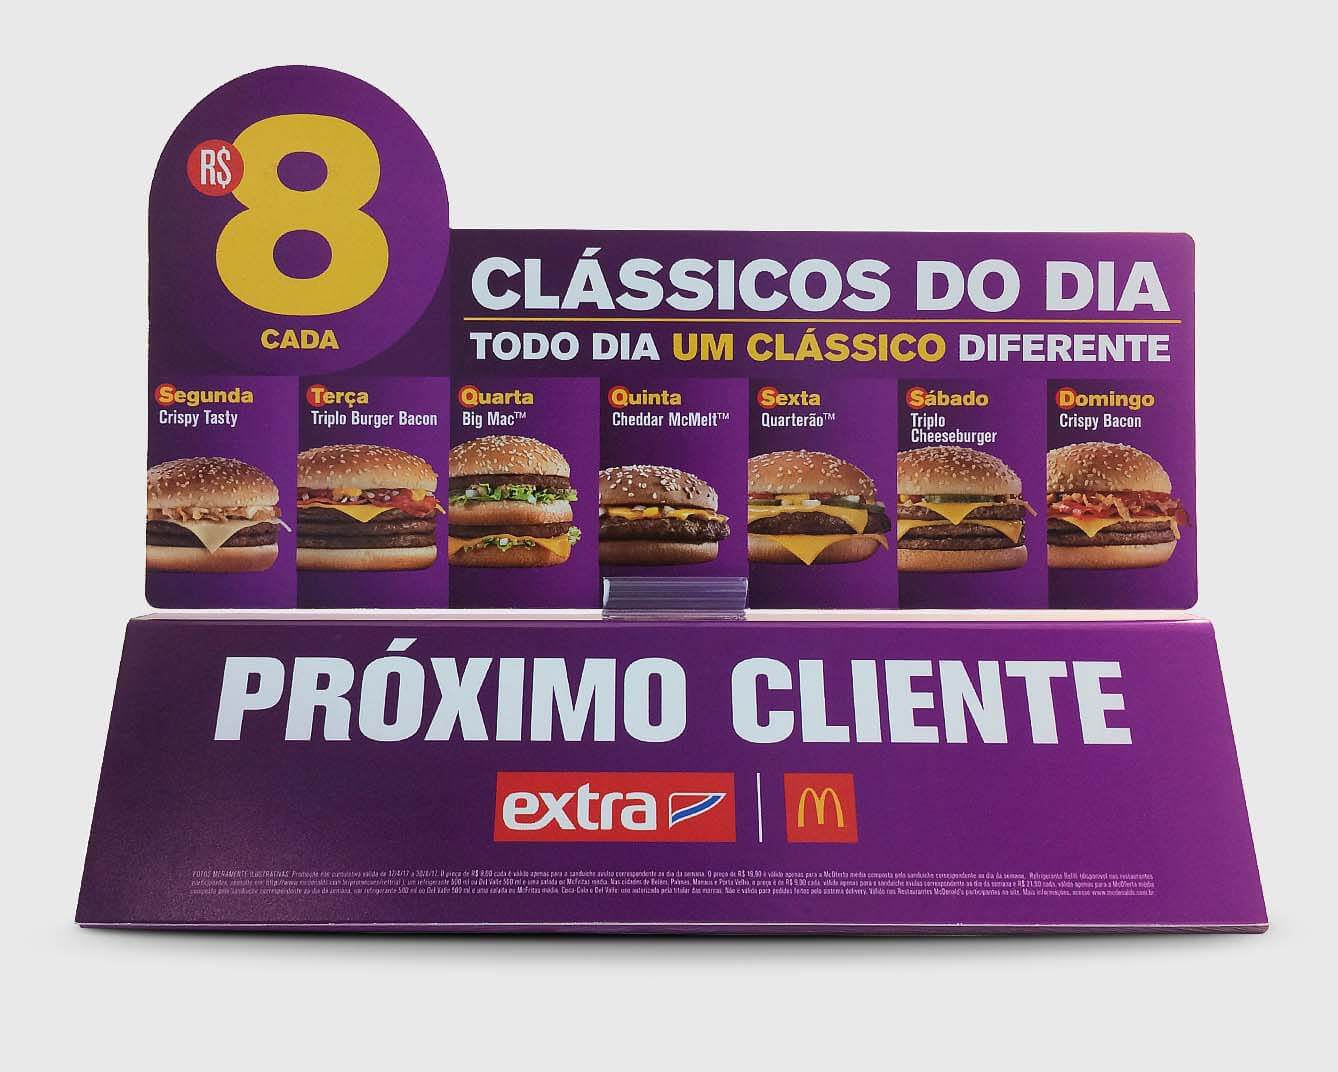 Exemplar de adesivo de promoção de sanduíches do Mc Donald's